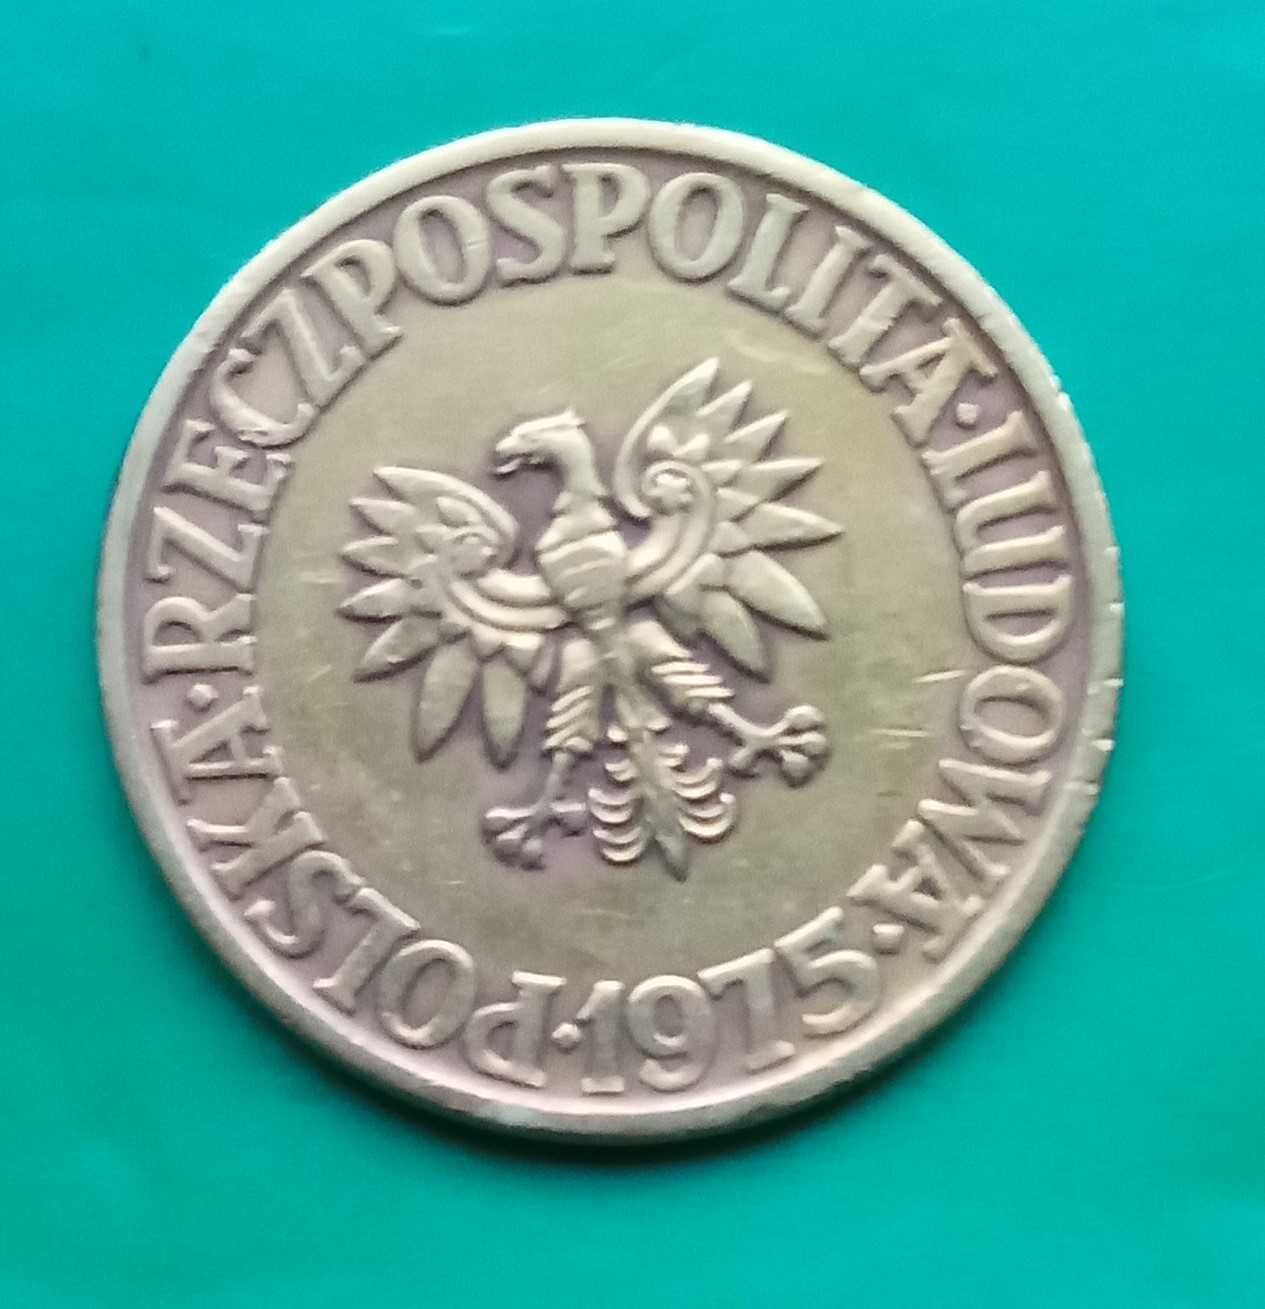 Moneta 5 złotych 1975r. bez znaku mennicy, stan bardzo dobry